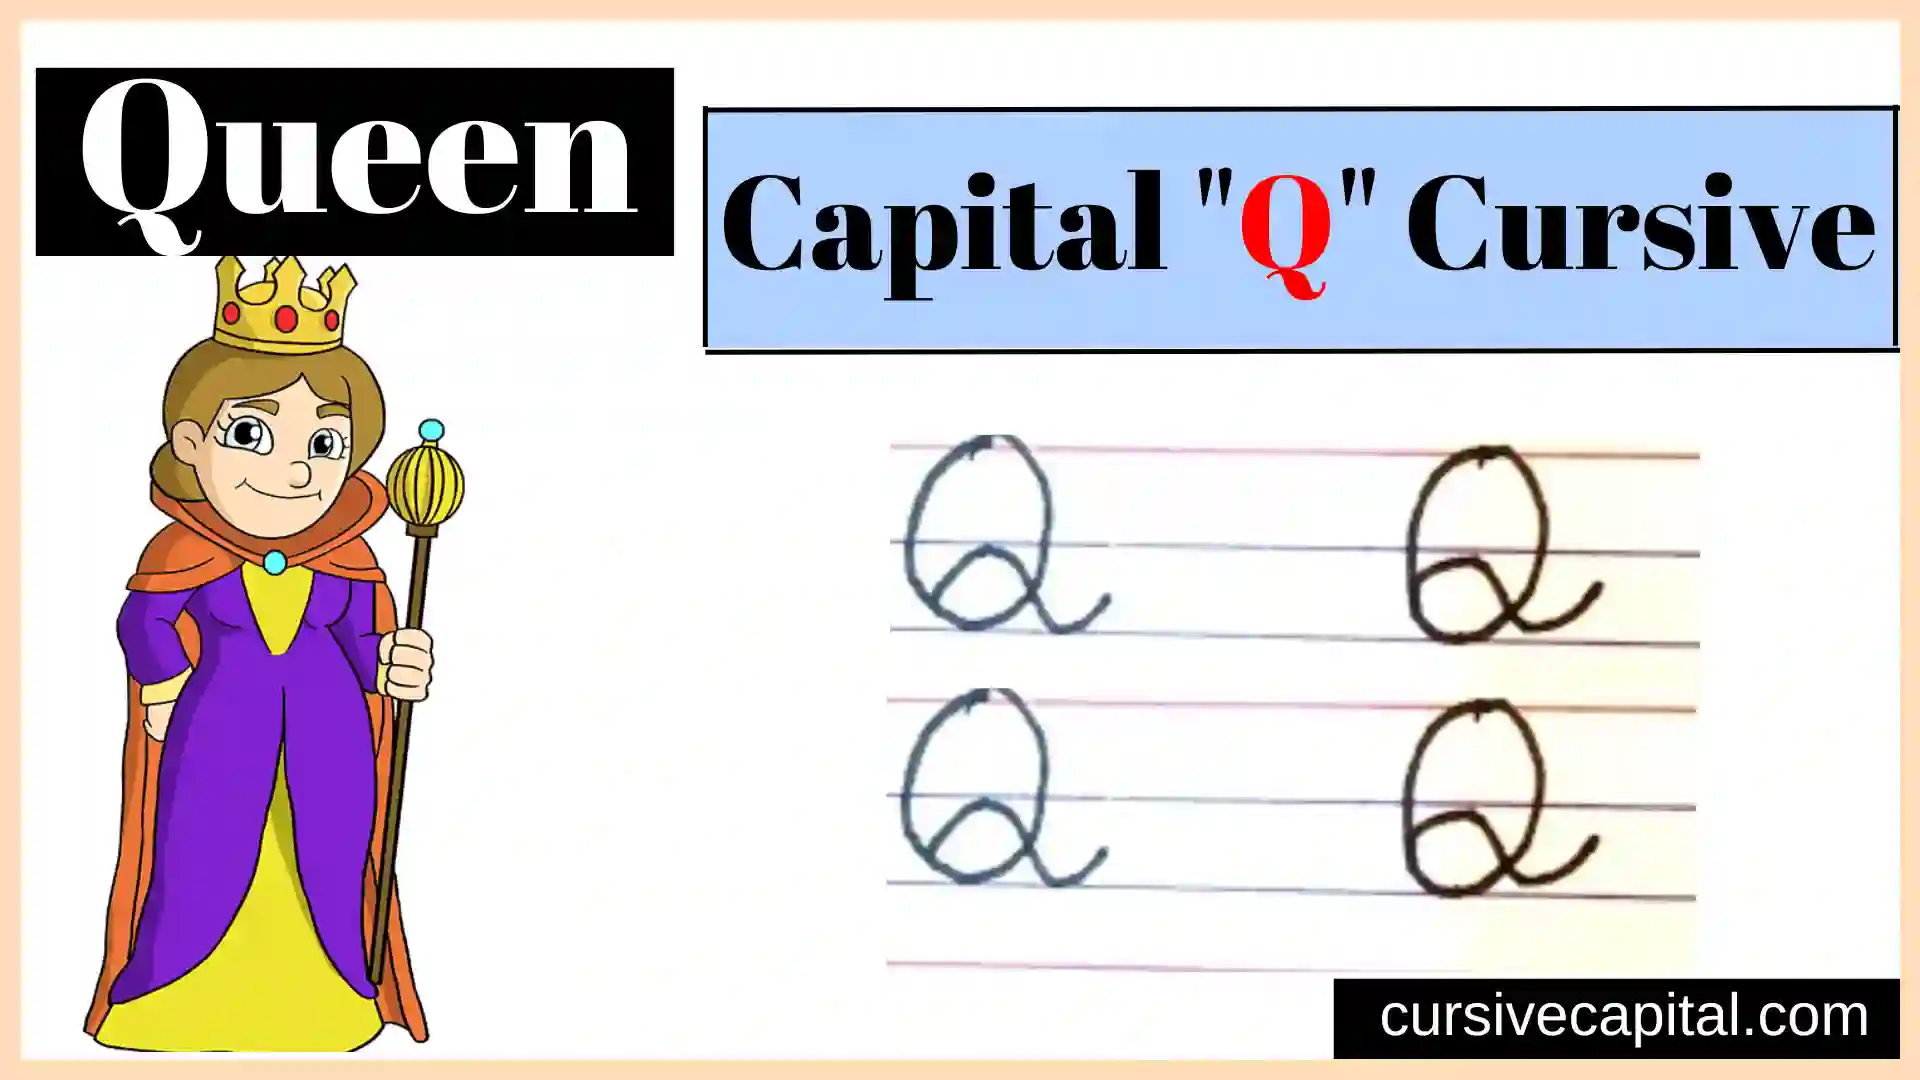 Capital Q cursive